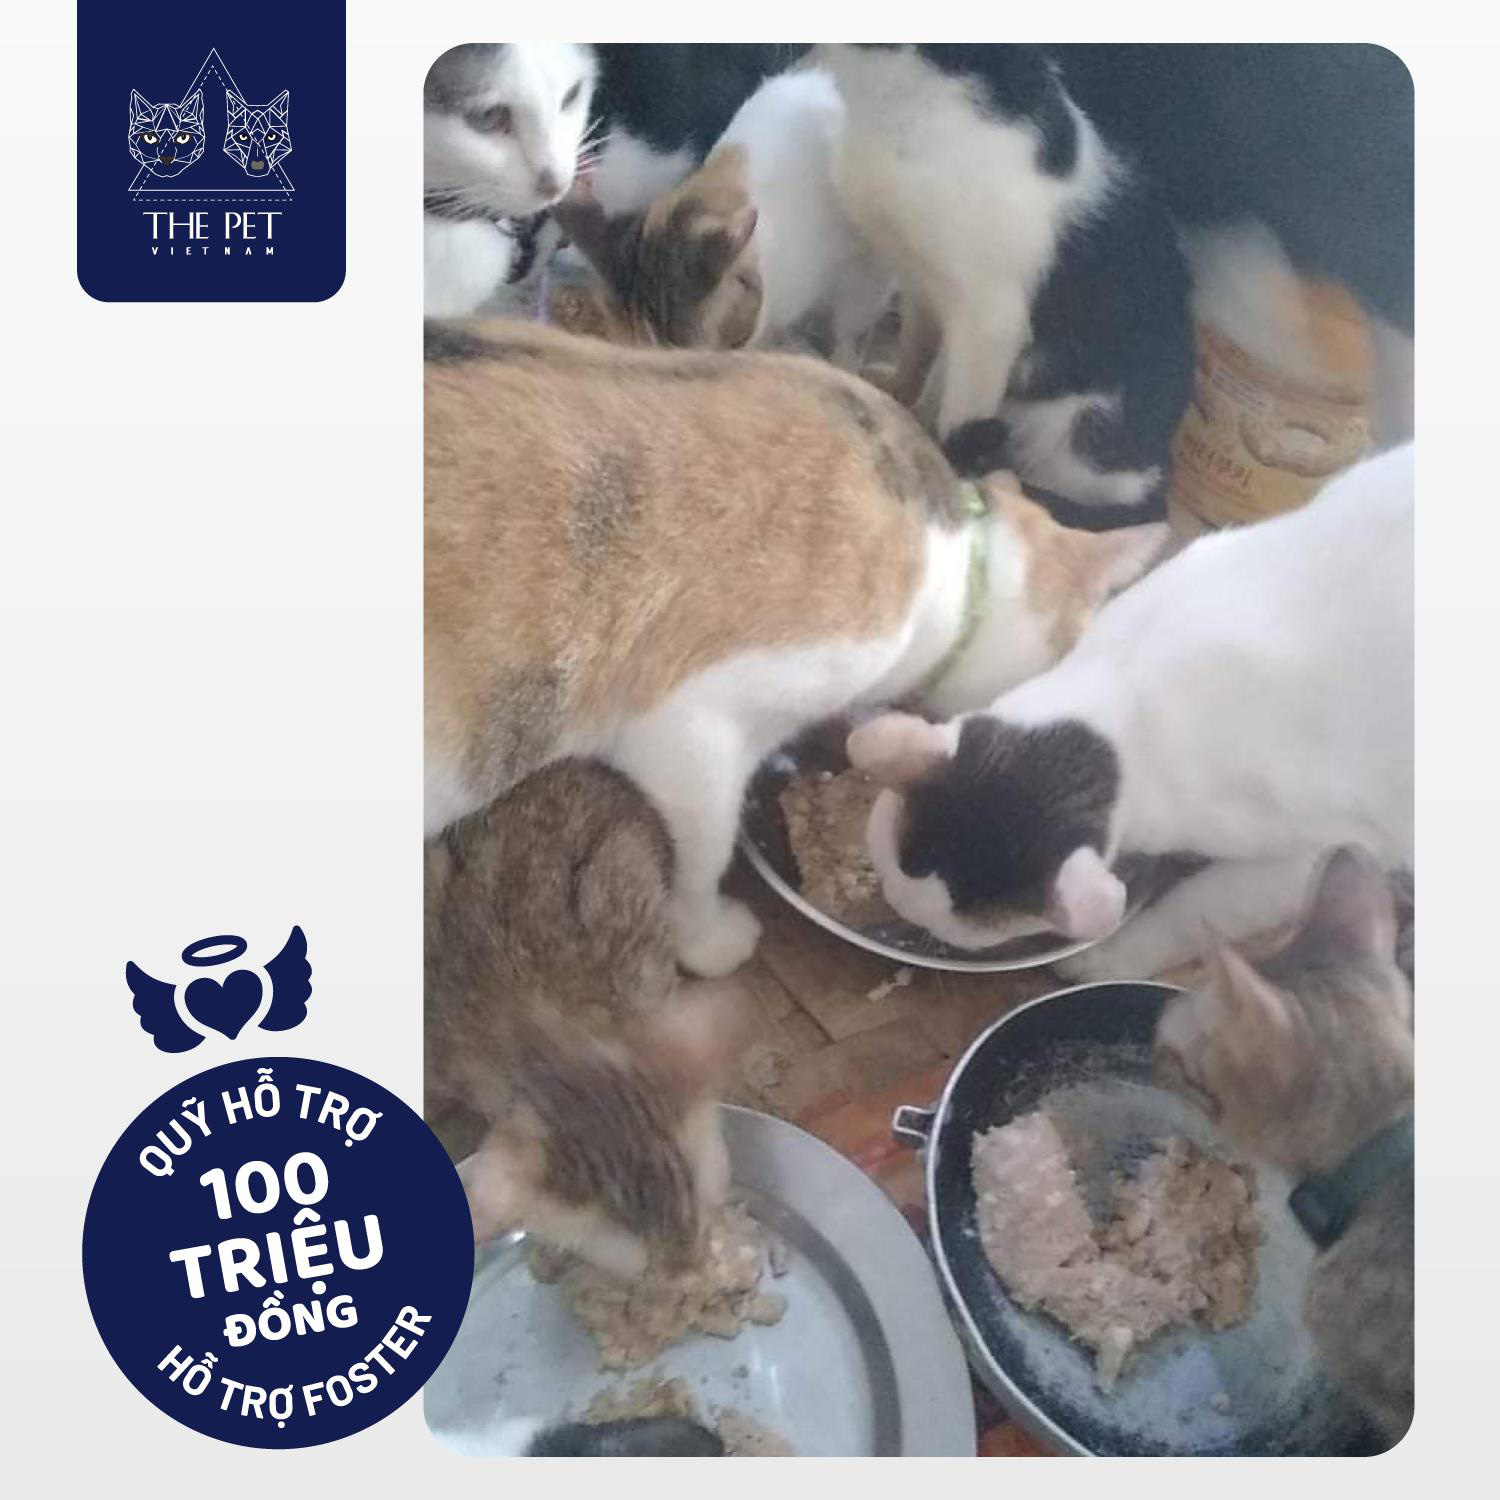 Thepet.vn lập quỹ 100 triệu đồng tặng pate tươi miễn phí cho chó mèo cơ nhỡ tại Sài Gòn - Ảnh 4.